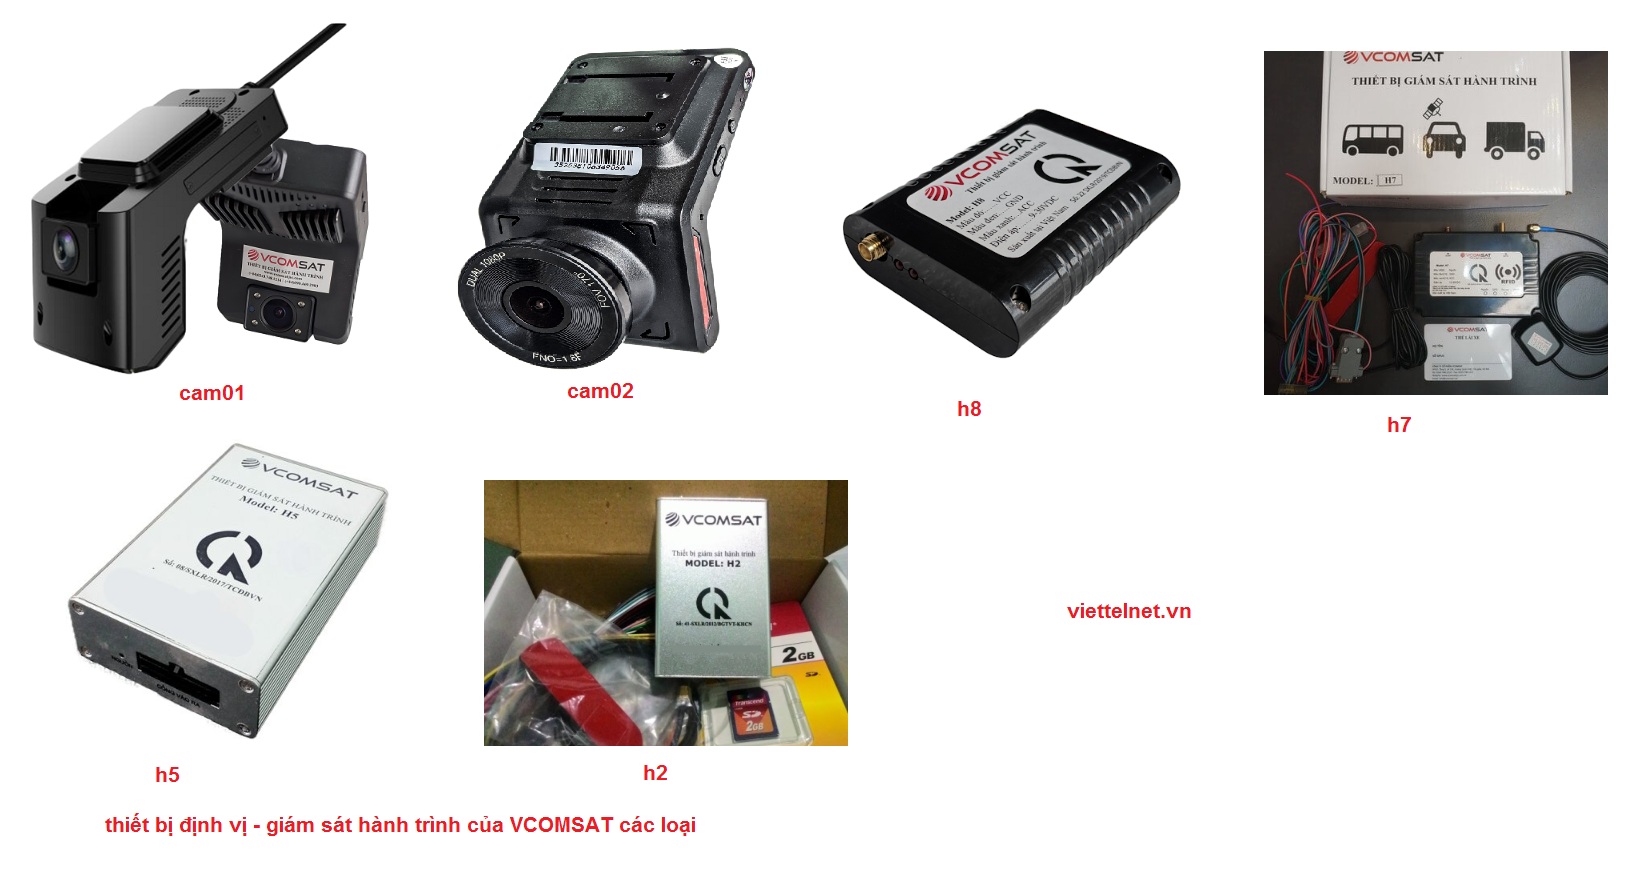 các loại thiết bị định vị - giám sát hành trình của VCOMSAT